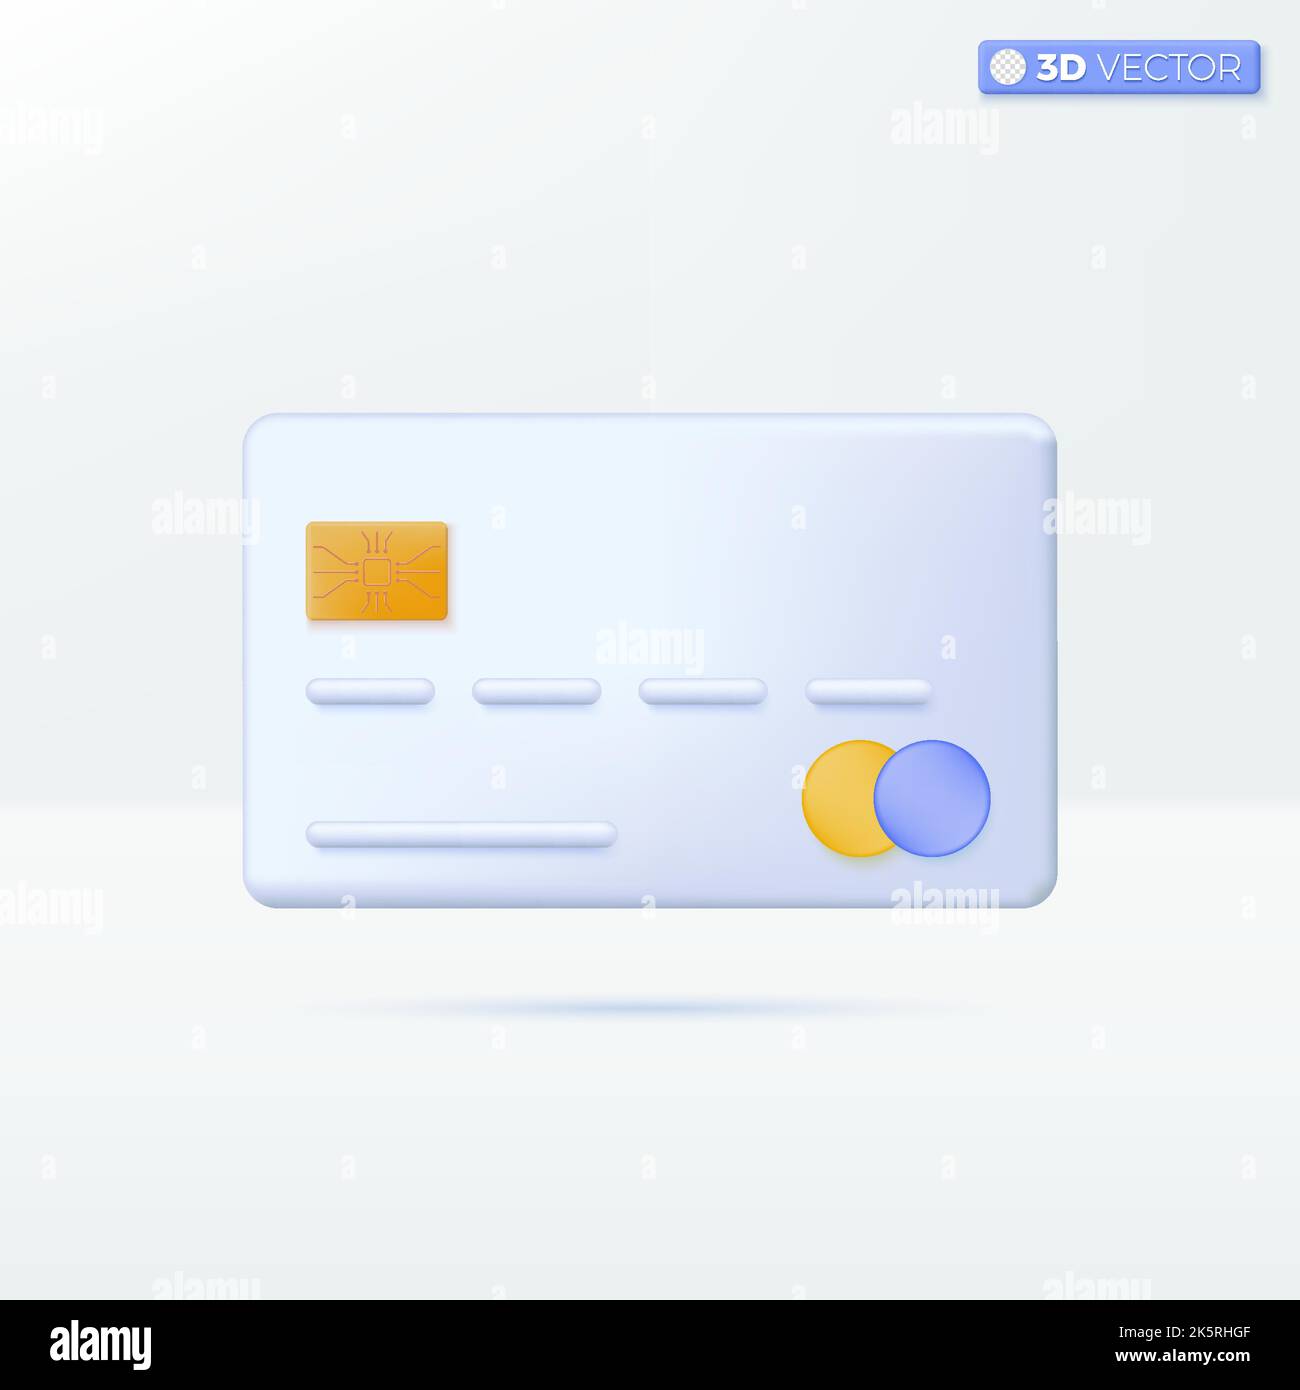 Símbolos de icono de tarjeta de crédito Platinum. Pagos, banca en línea, concepto de transferencias de dinero. Diseño de ilustración aislada vectorial en 3D. Dibujos animados pastel mínimo s Ilustración del Vector